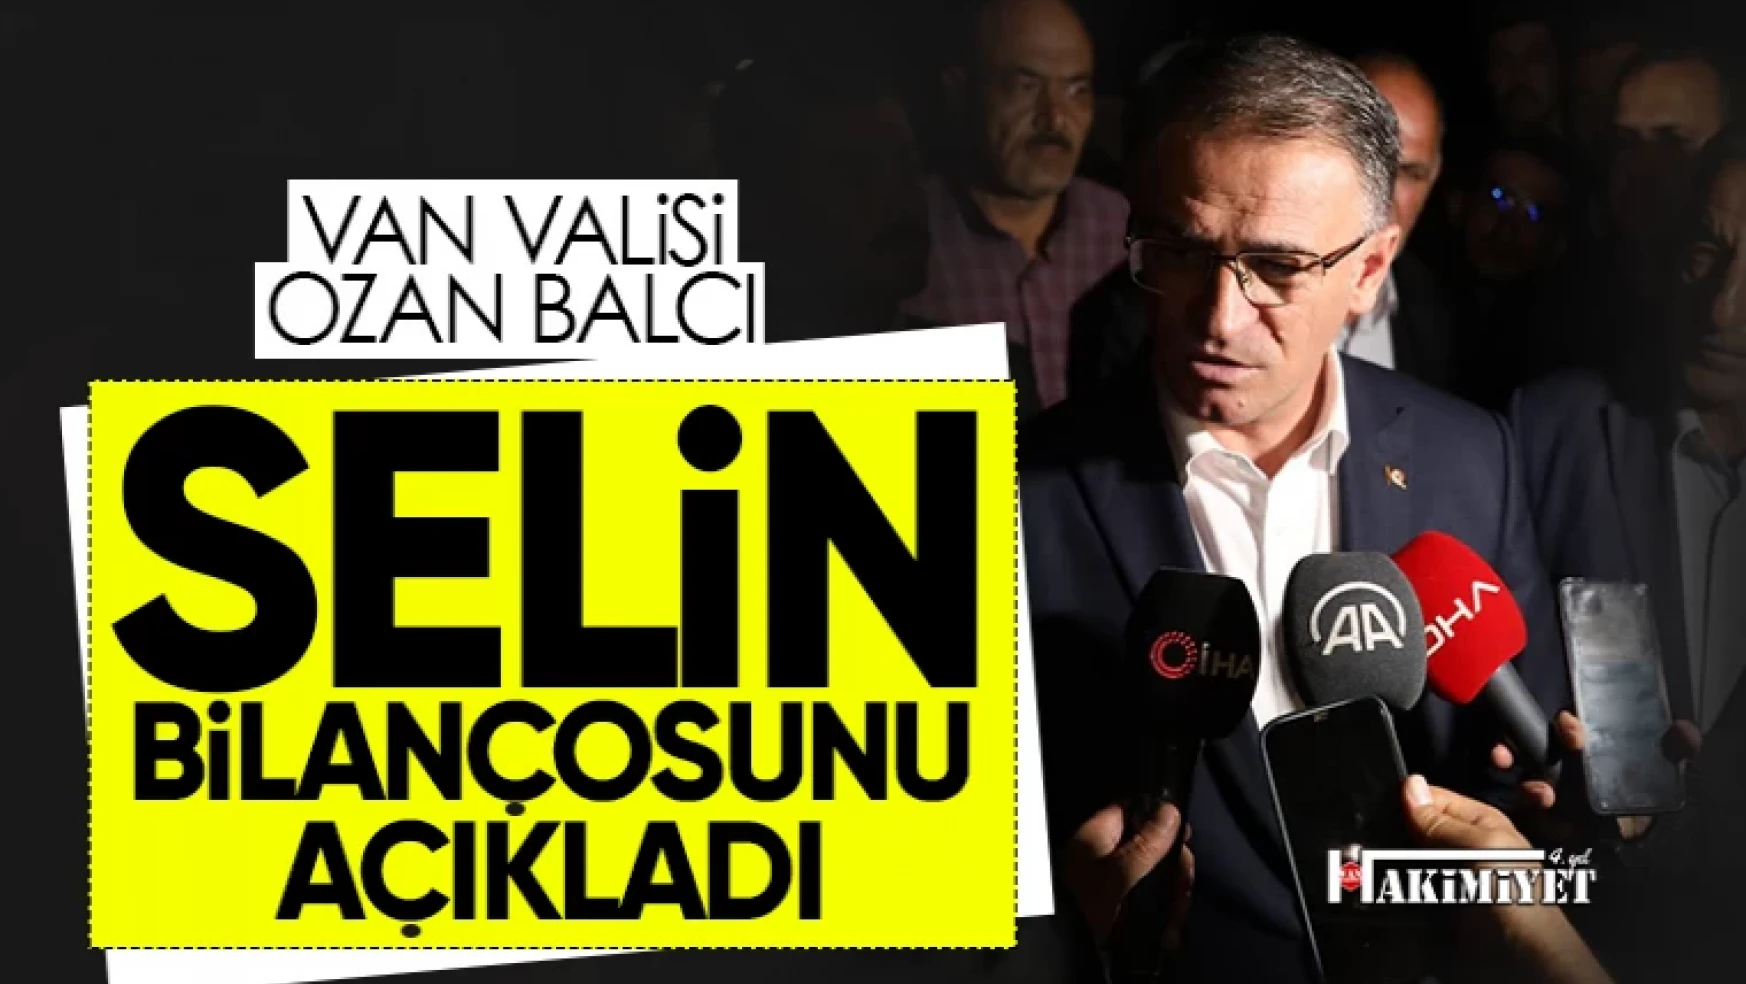 Van Valisi Balcı Özalp'taki selin bilançosunu açıkladı